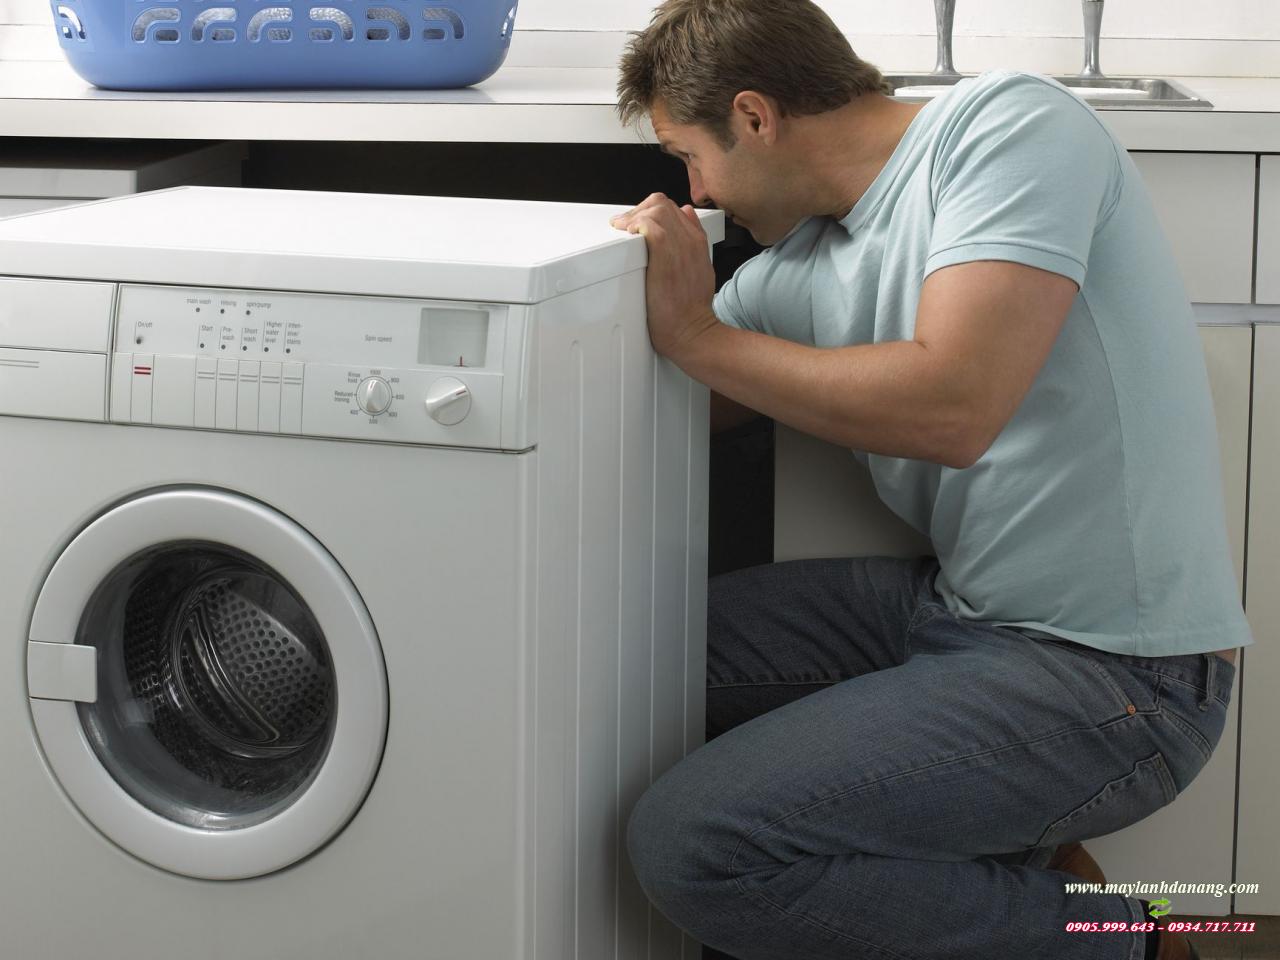 Hướng dẫn cách vệ sinh máy giặt nhanh chóng tại nhà/quoctung.com